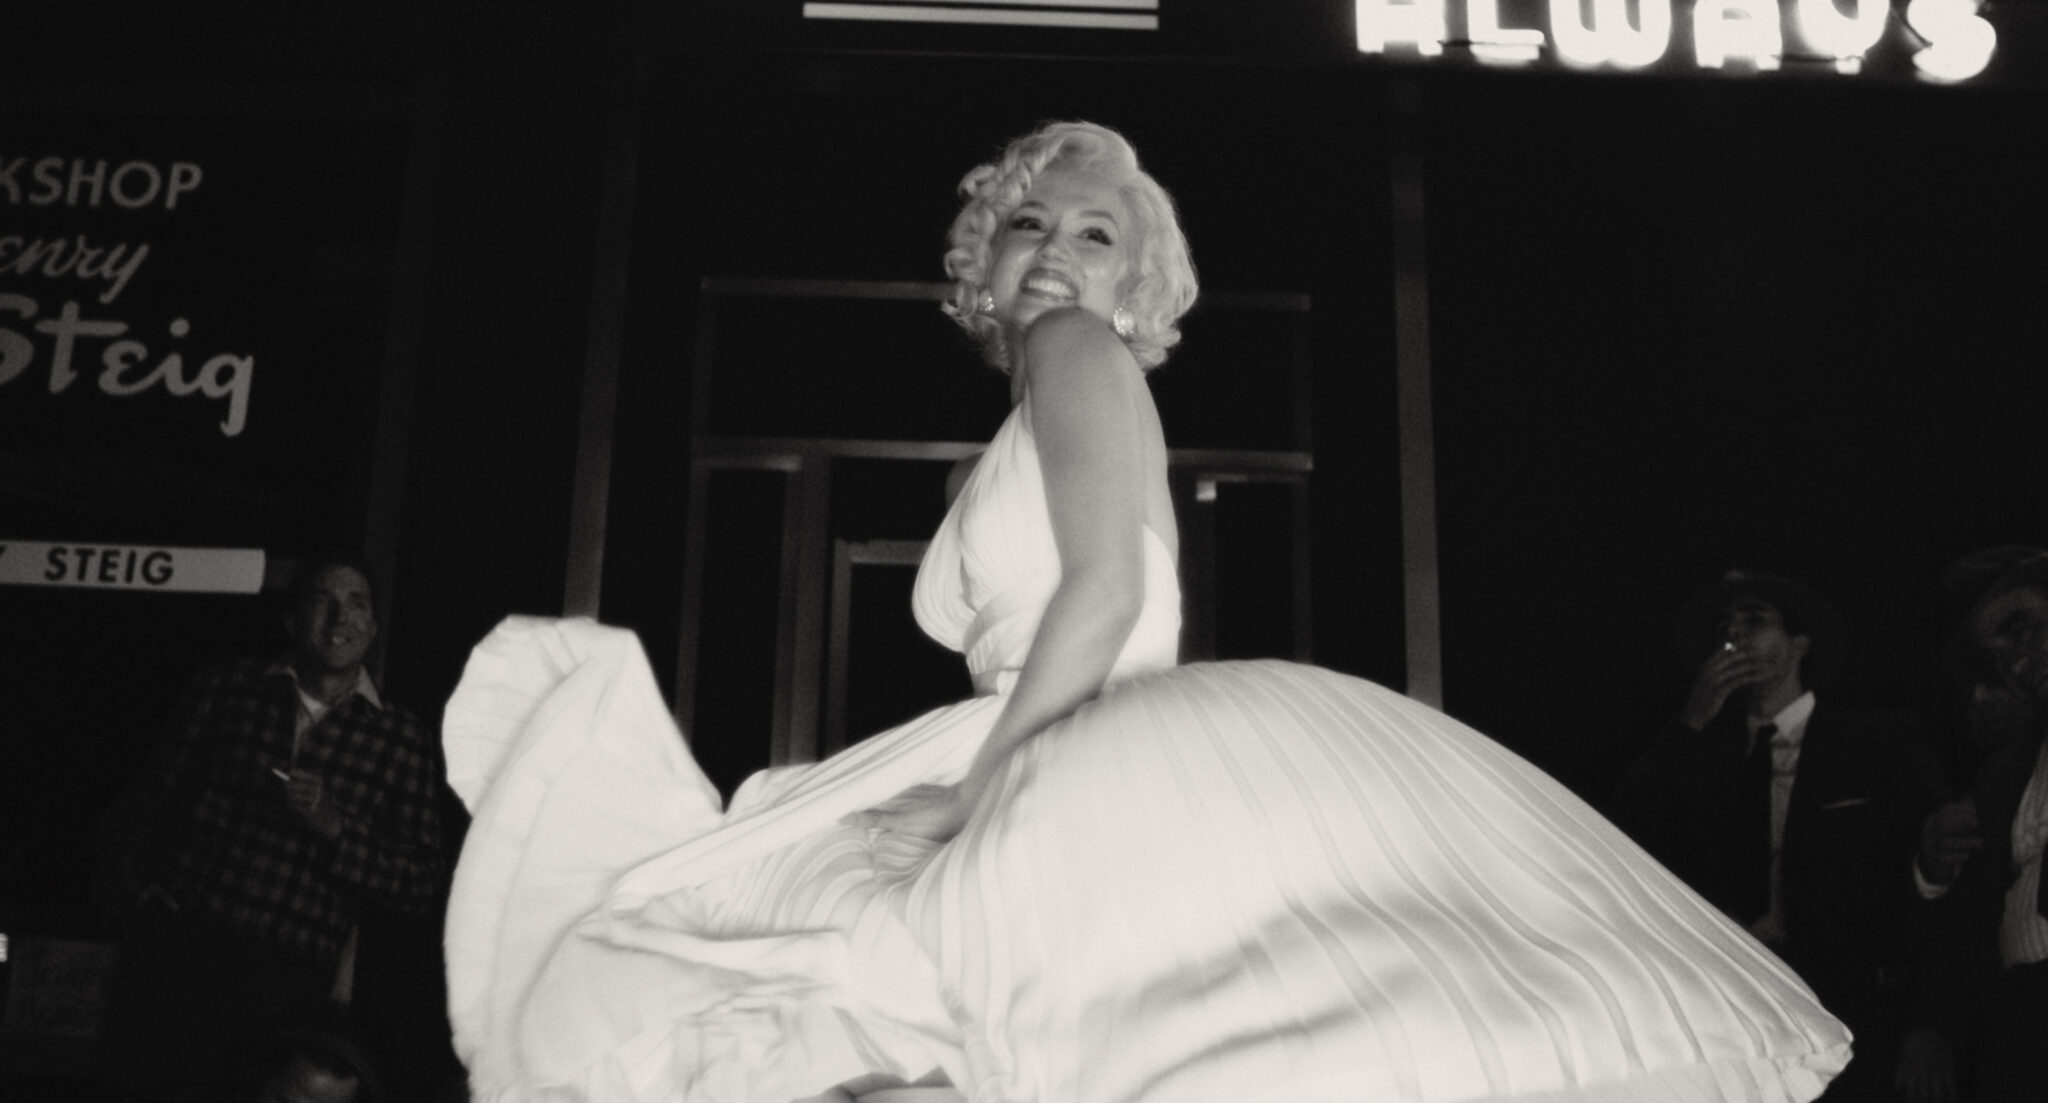 Schwarzweißbild von Ana de Armas als Marilyn Monroe in weißem Kleid und lasziver Pose.